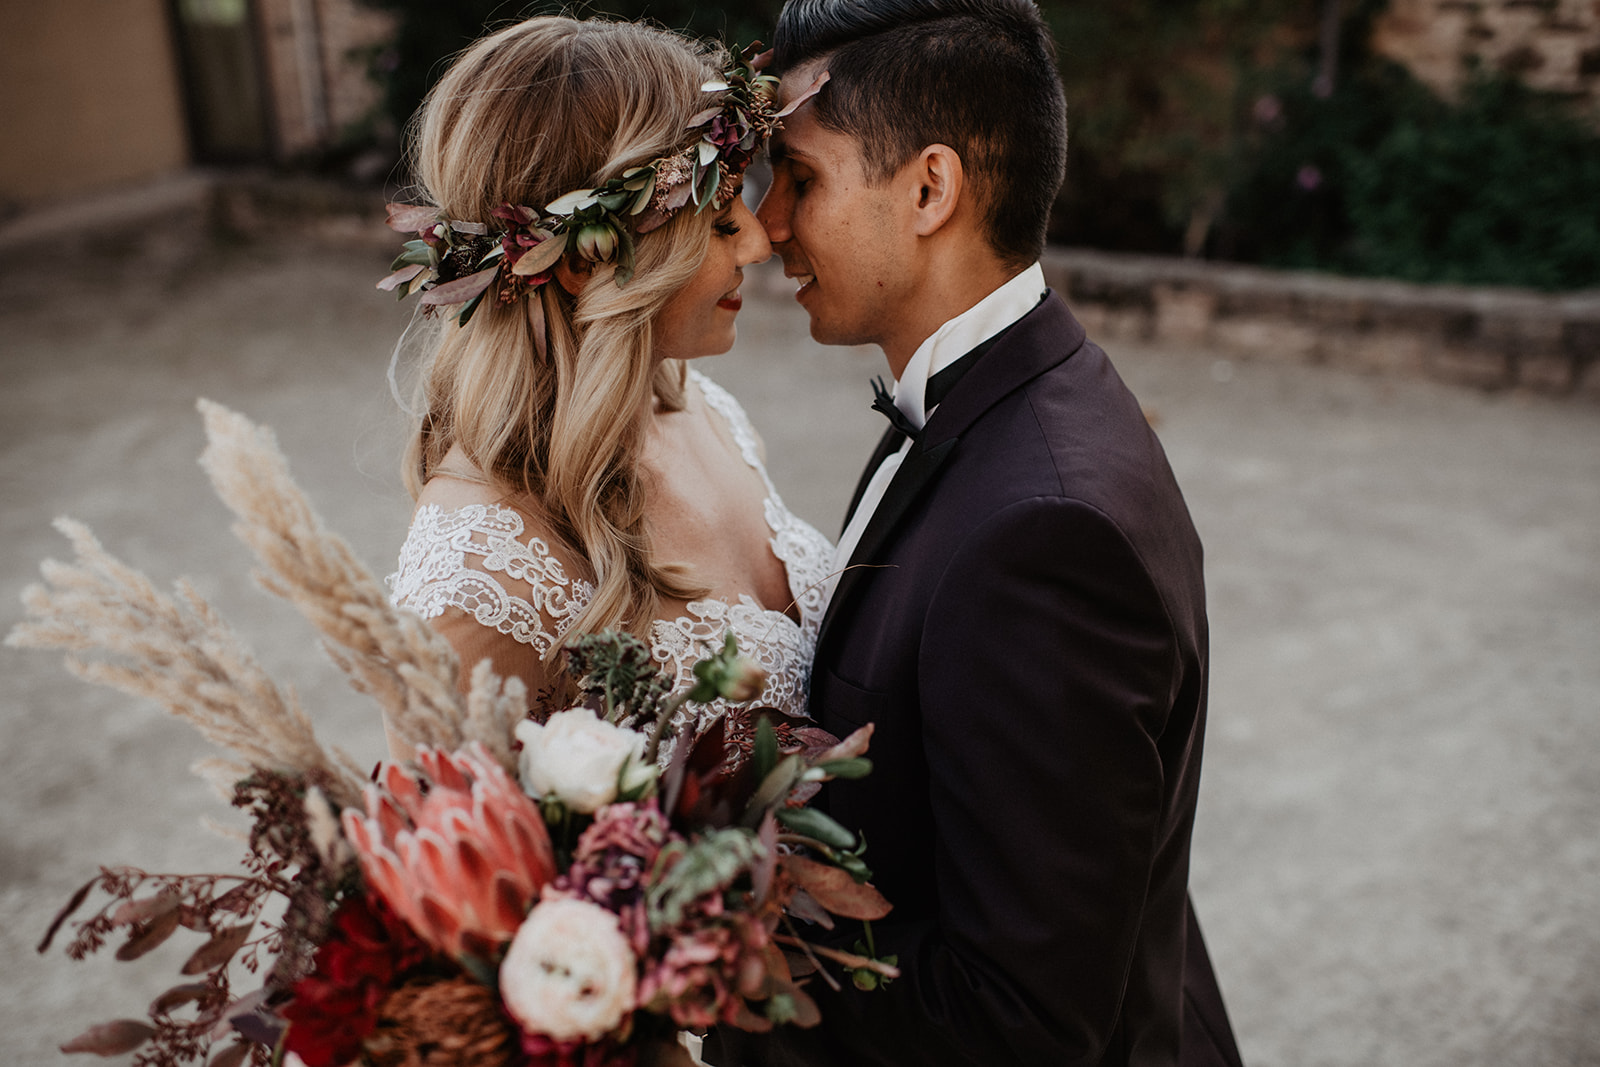 Professioneller Hochzeitsfotograf - Brauchen wir wirklich einen? | hey-julisa.com